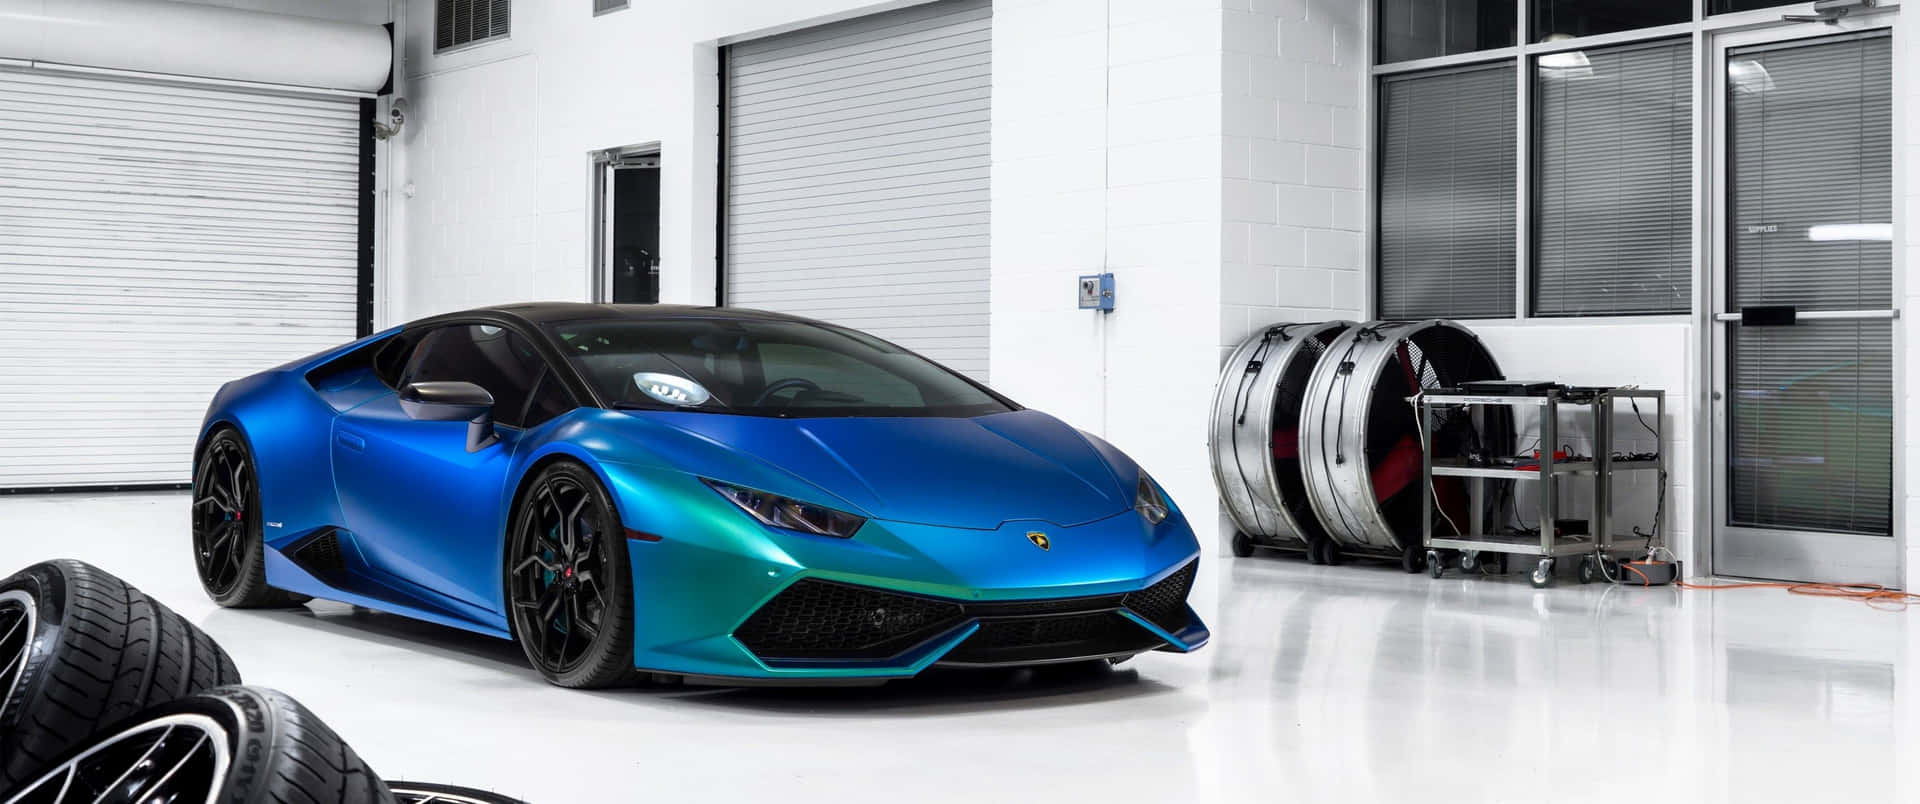 3440x1440 Blue Lamborghini Huracan Car Wallpaper